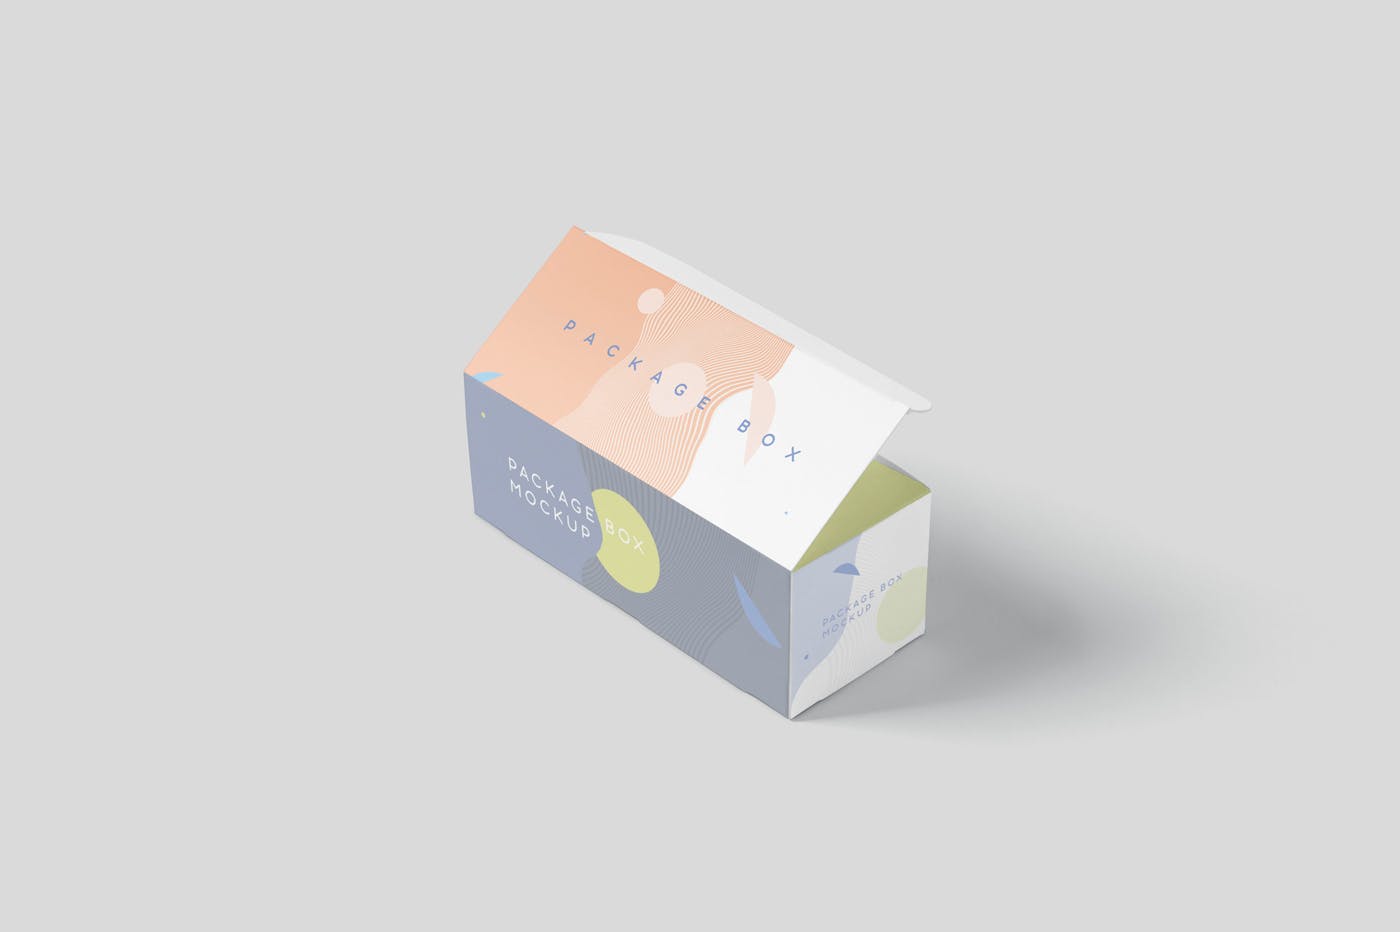 宽矩形包装盒外观设计效果图素材库精选 Package Box Mock-Up Set – Wide Rectangle插图(5)